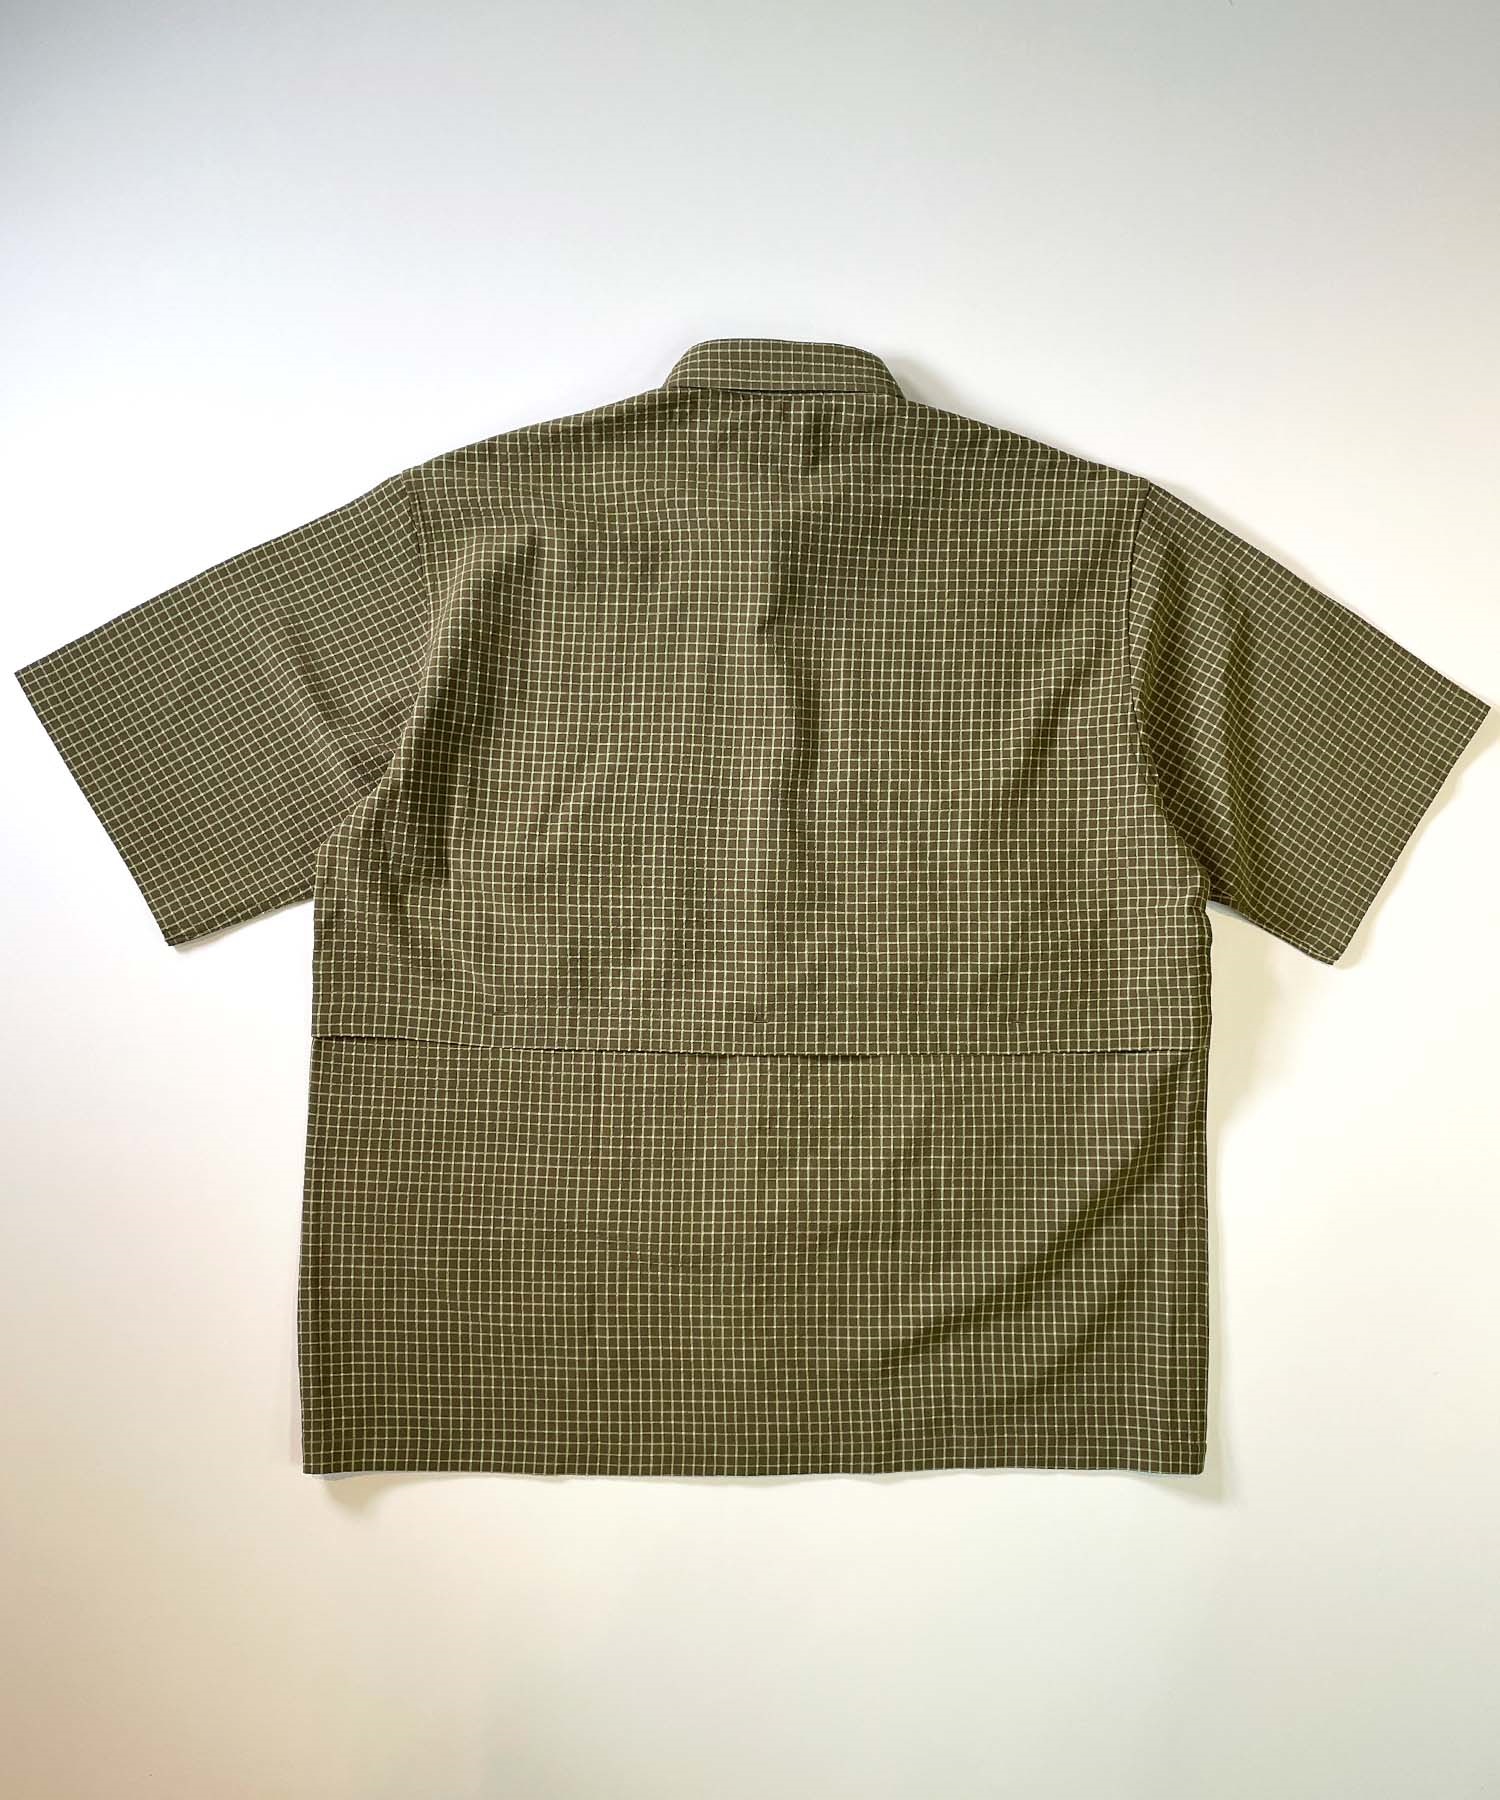 DEAR LAUREL ディアローレル メンズ ユーティリティーフラップシャツ 半袖 格子柄 Utility flap shirts D24S2401(BLK-M)